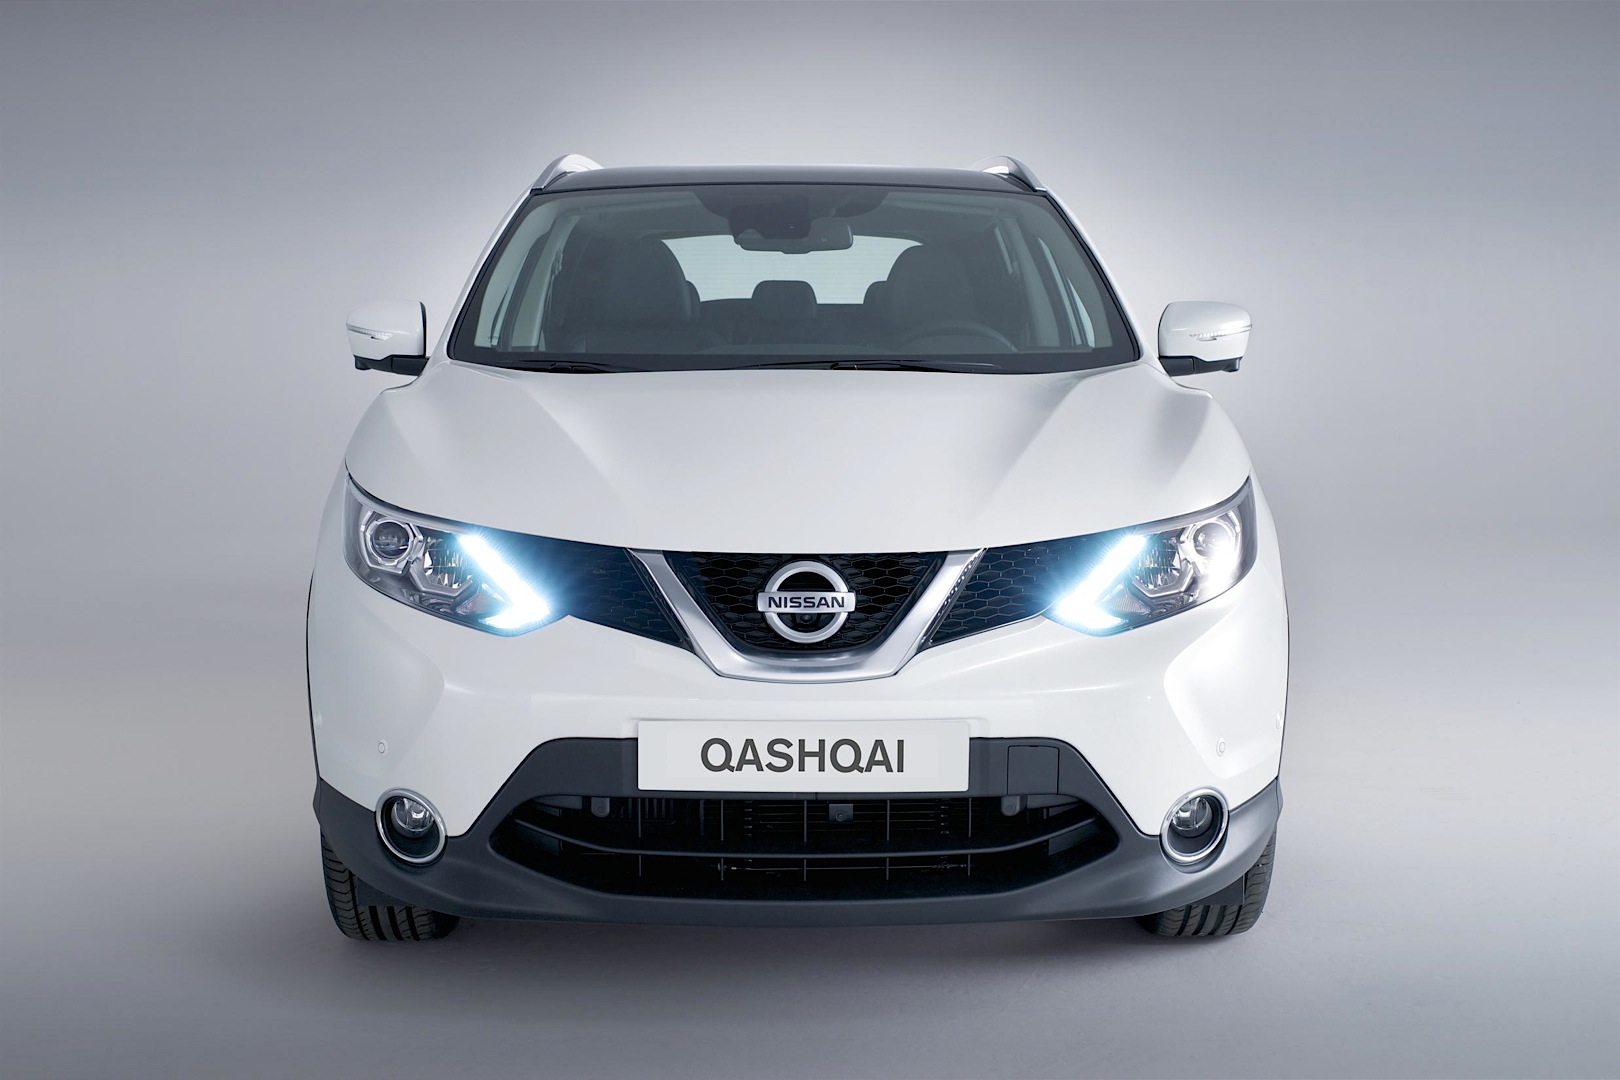 Nissan-Qashqai-2014-12.jpg